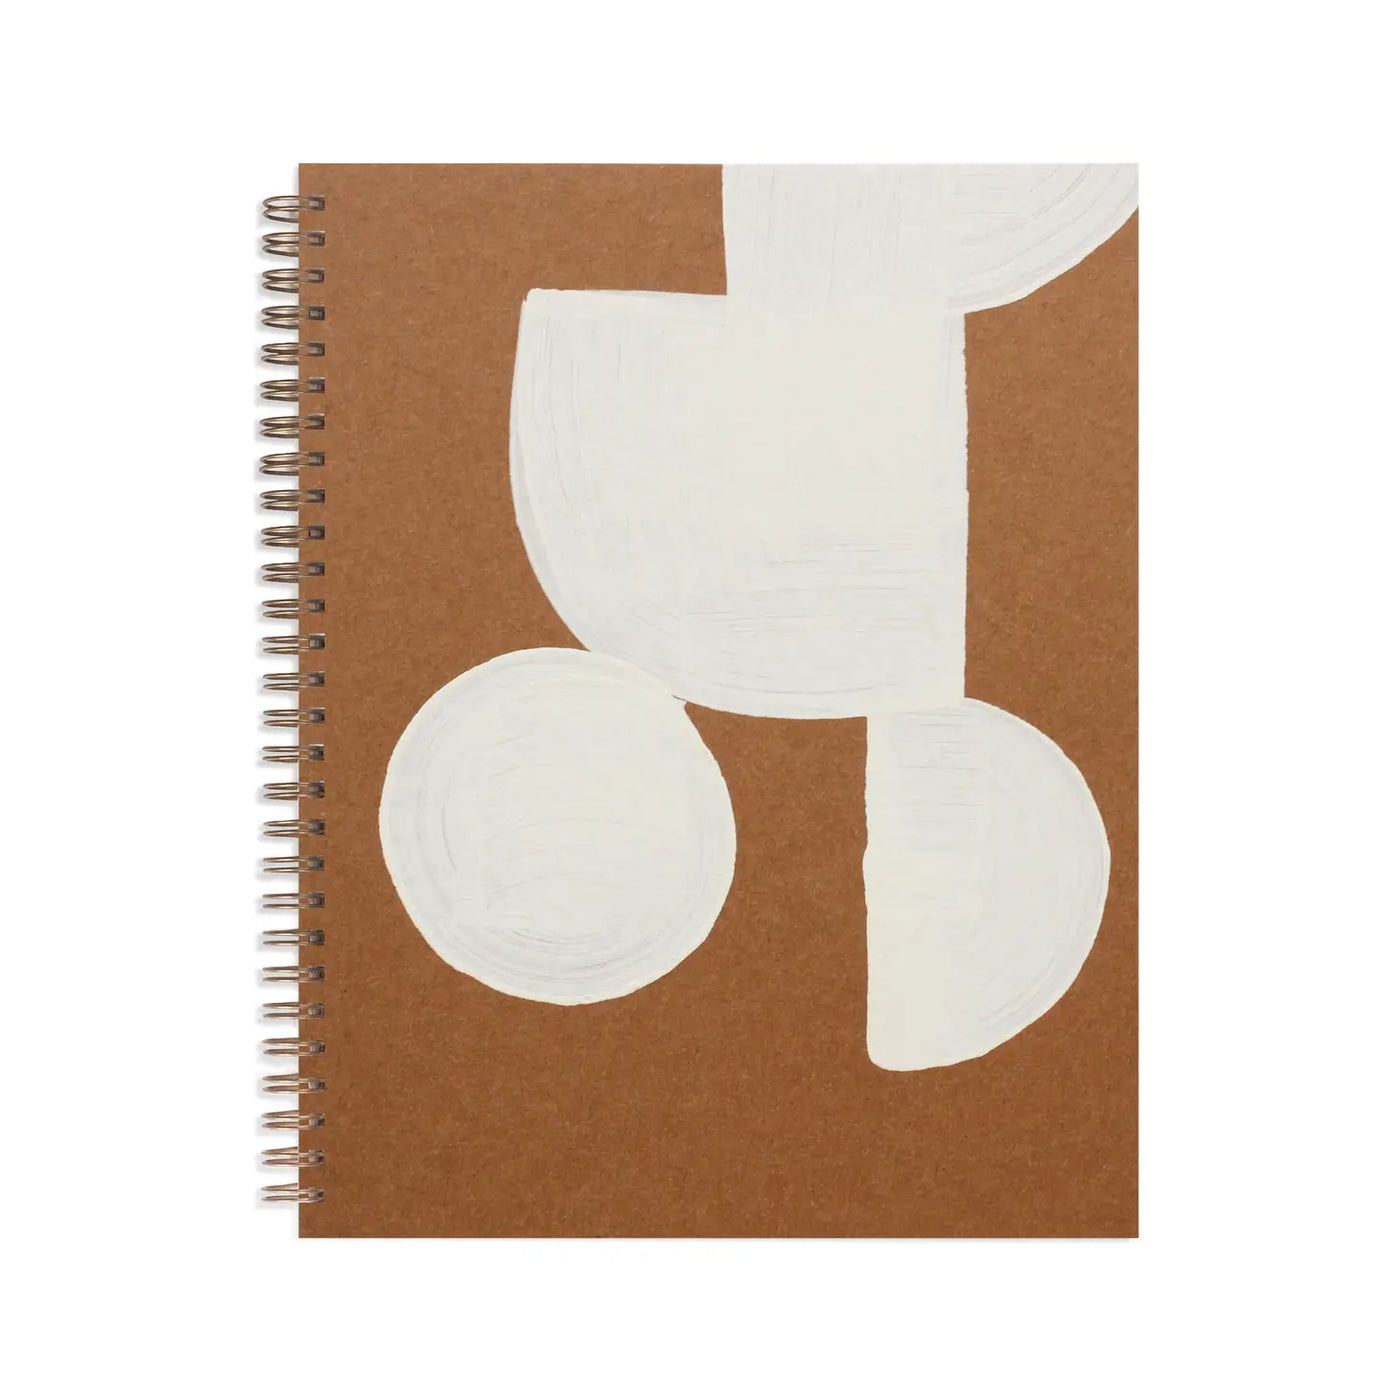 Painted Workbook - Medium Lined Kraft